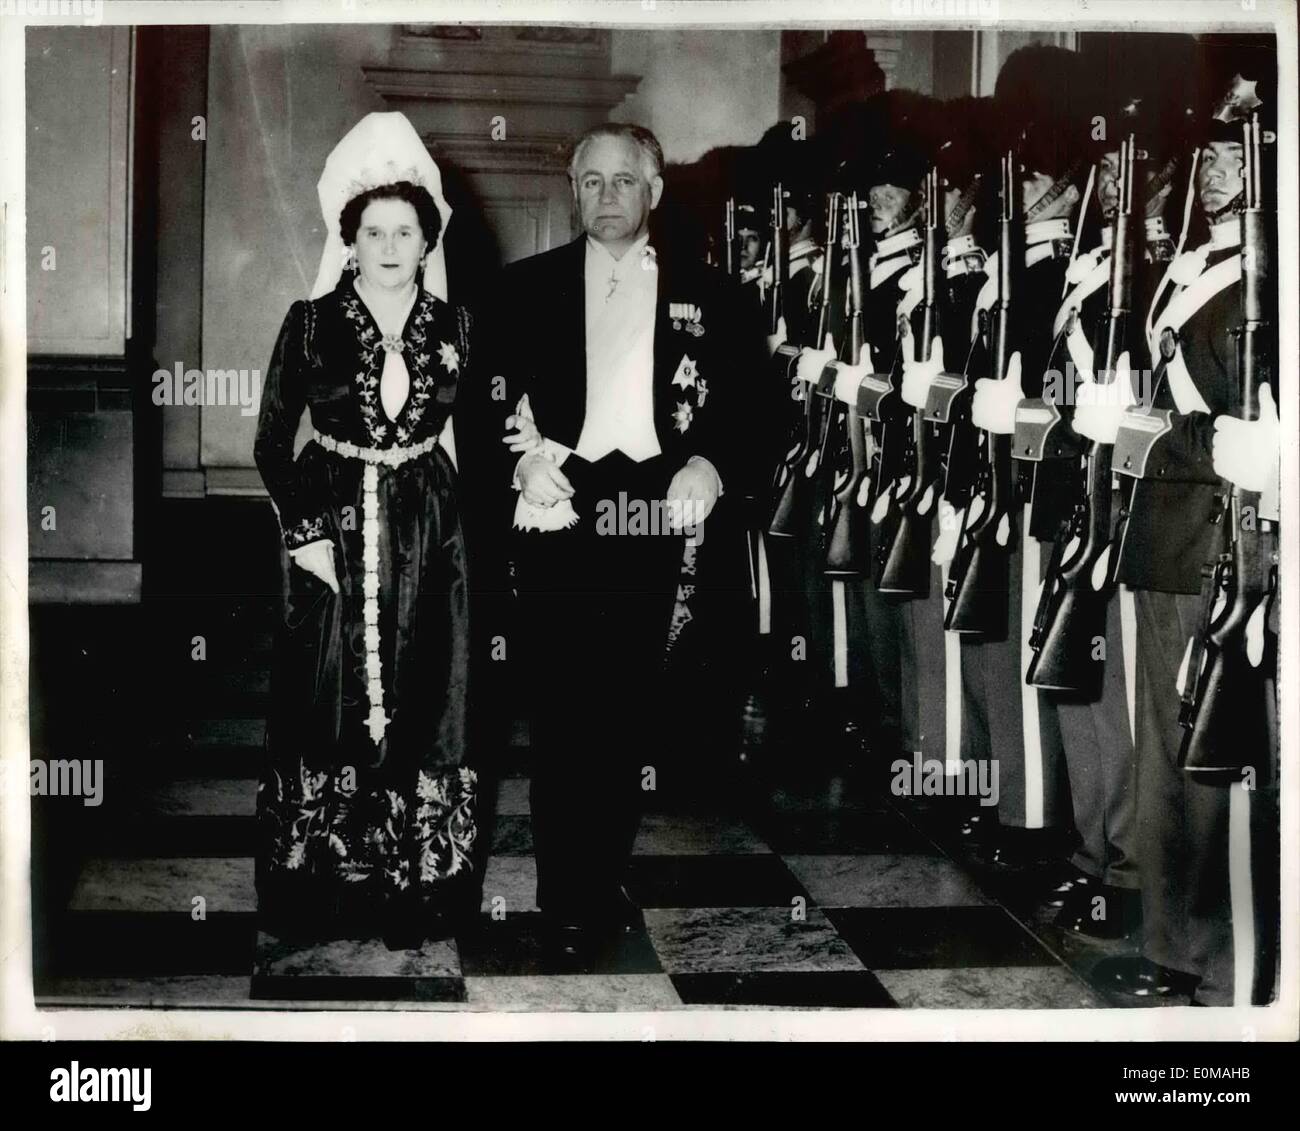 Avril 04, 1954 - Le Président de l'Islande en visite officielle au Danemark. Asgeir Asgeirsson Président de l'Islande, accompagné de son épouse, est arrivé hier à Copenhague en visite officielle au Danemark. C'est la première visite du Président de l'Islande à la capitale danoise, qui pendant 500 ans fut aussi la capitale de l'Islande. La nuit dernière, ils ont assisté à un dîner donné par le roi Frédéric en leur honneur, à la salle des Chevaliers, dans le Palais de Christiansborg, à Copenhague. Photo : Keystone montre Président Asgeir Asgeirsson et sa femme, arrivant à l'Christianborg Palace, pour le dîner d'hier soir en leur honneur. Banque D'Images